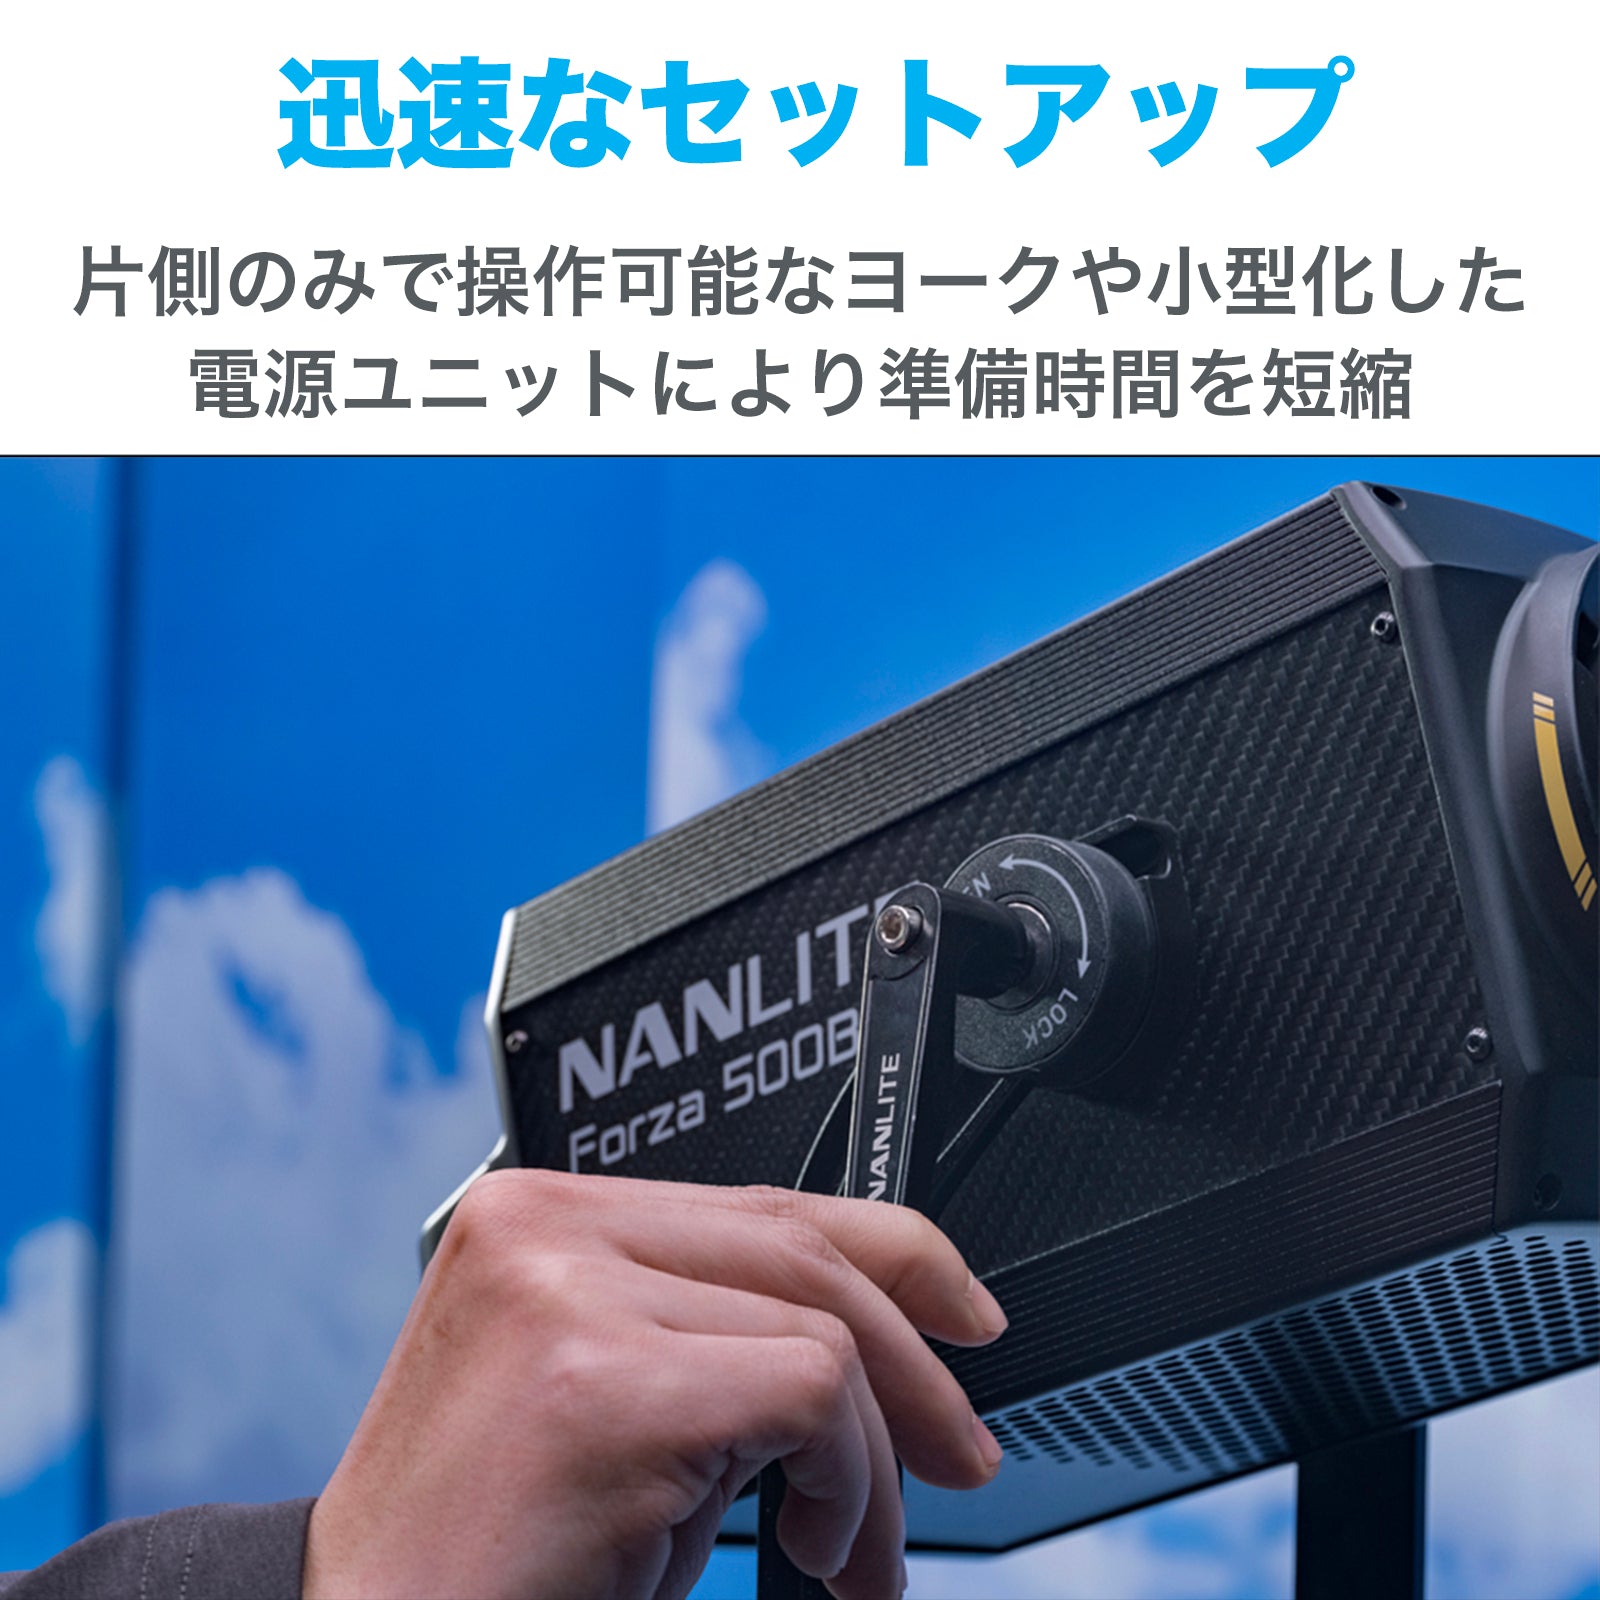 NANLITE Forza 300 Ⅱ ナンライト LEDスポットライト スタジオライト 撮影用ライト ポートレート 高輝度 定常光ライト  色温度5600K 350W CRI96 専用ケース付属 12ヶ月保証